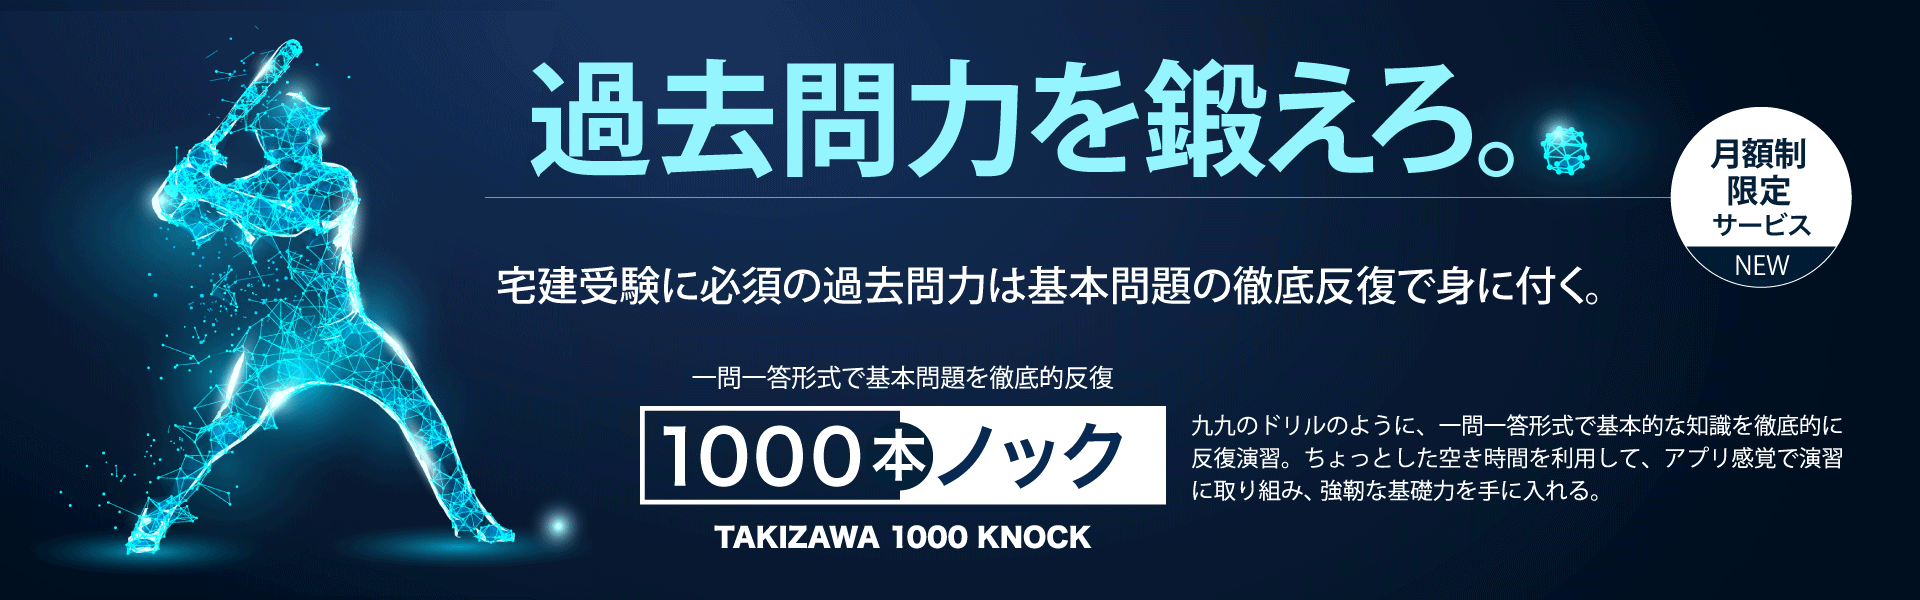 タキザワ1000本ノック